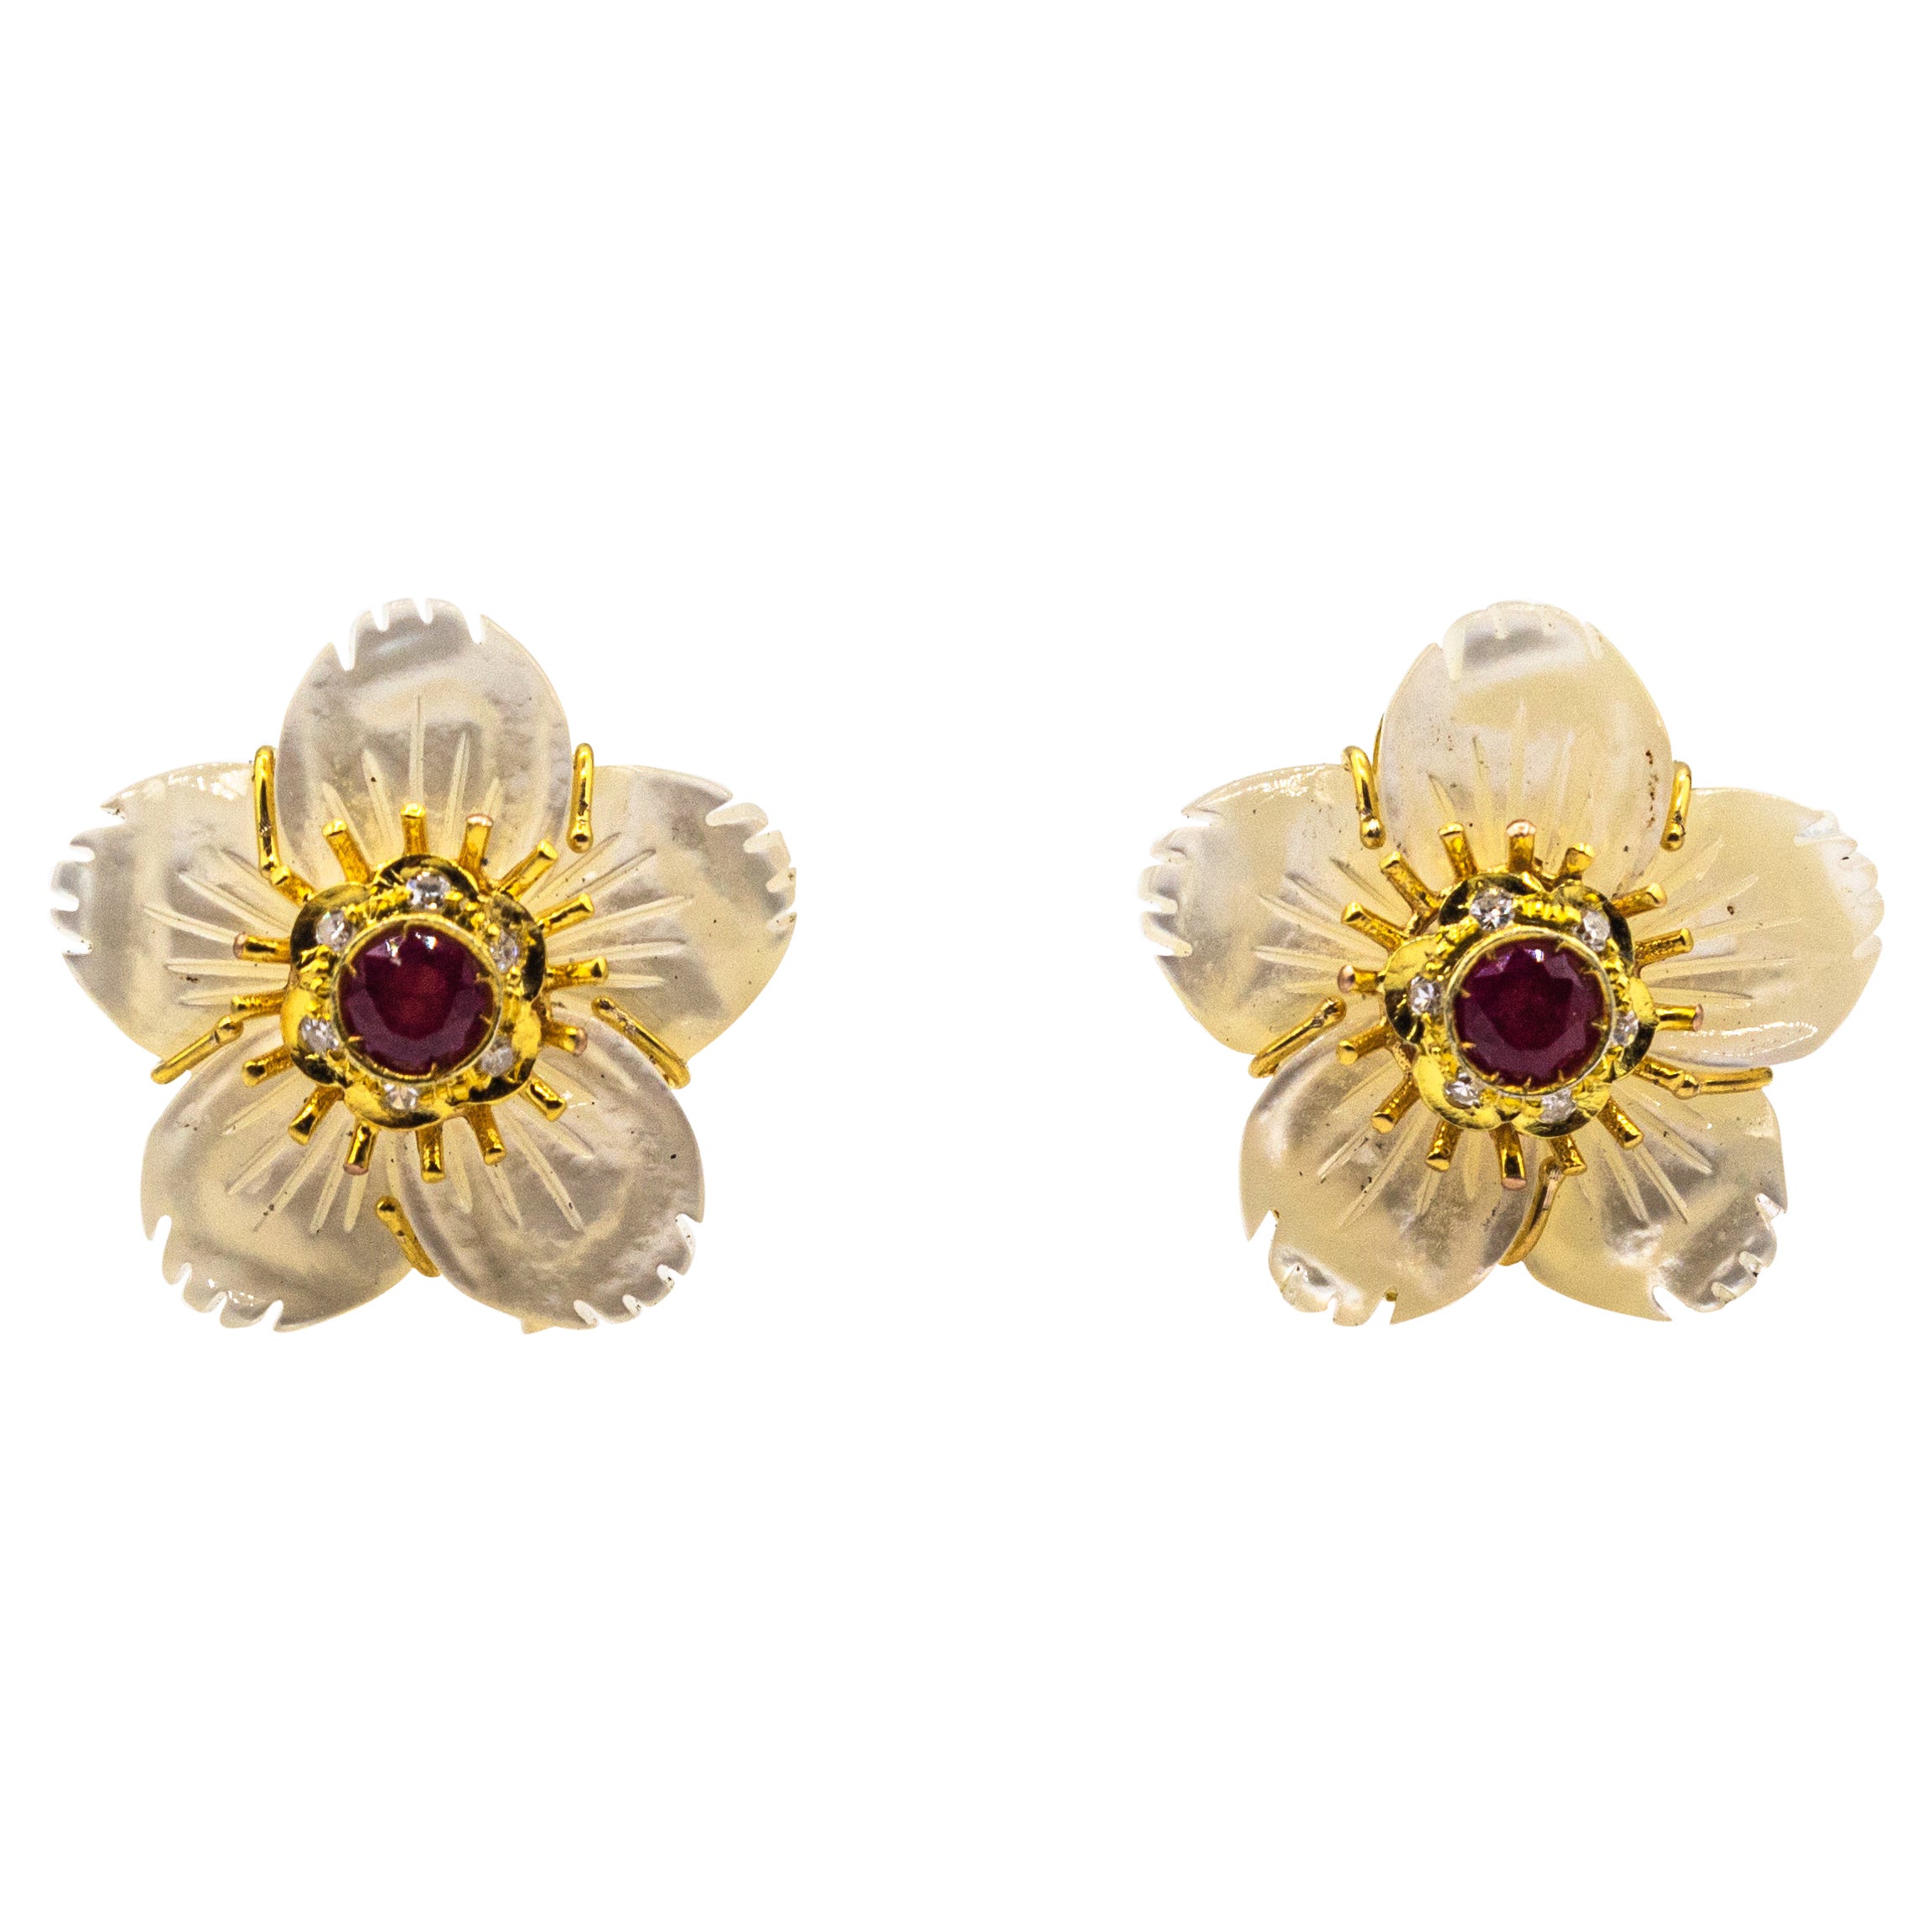 Boucles d'oreilles fleurs en or jaune avec diamant, rubis et nacre de style Art Nouveau